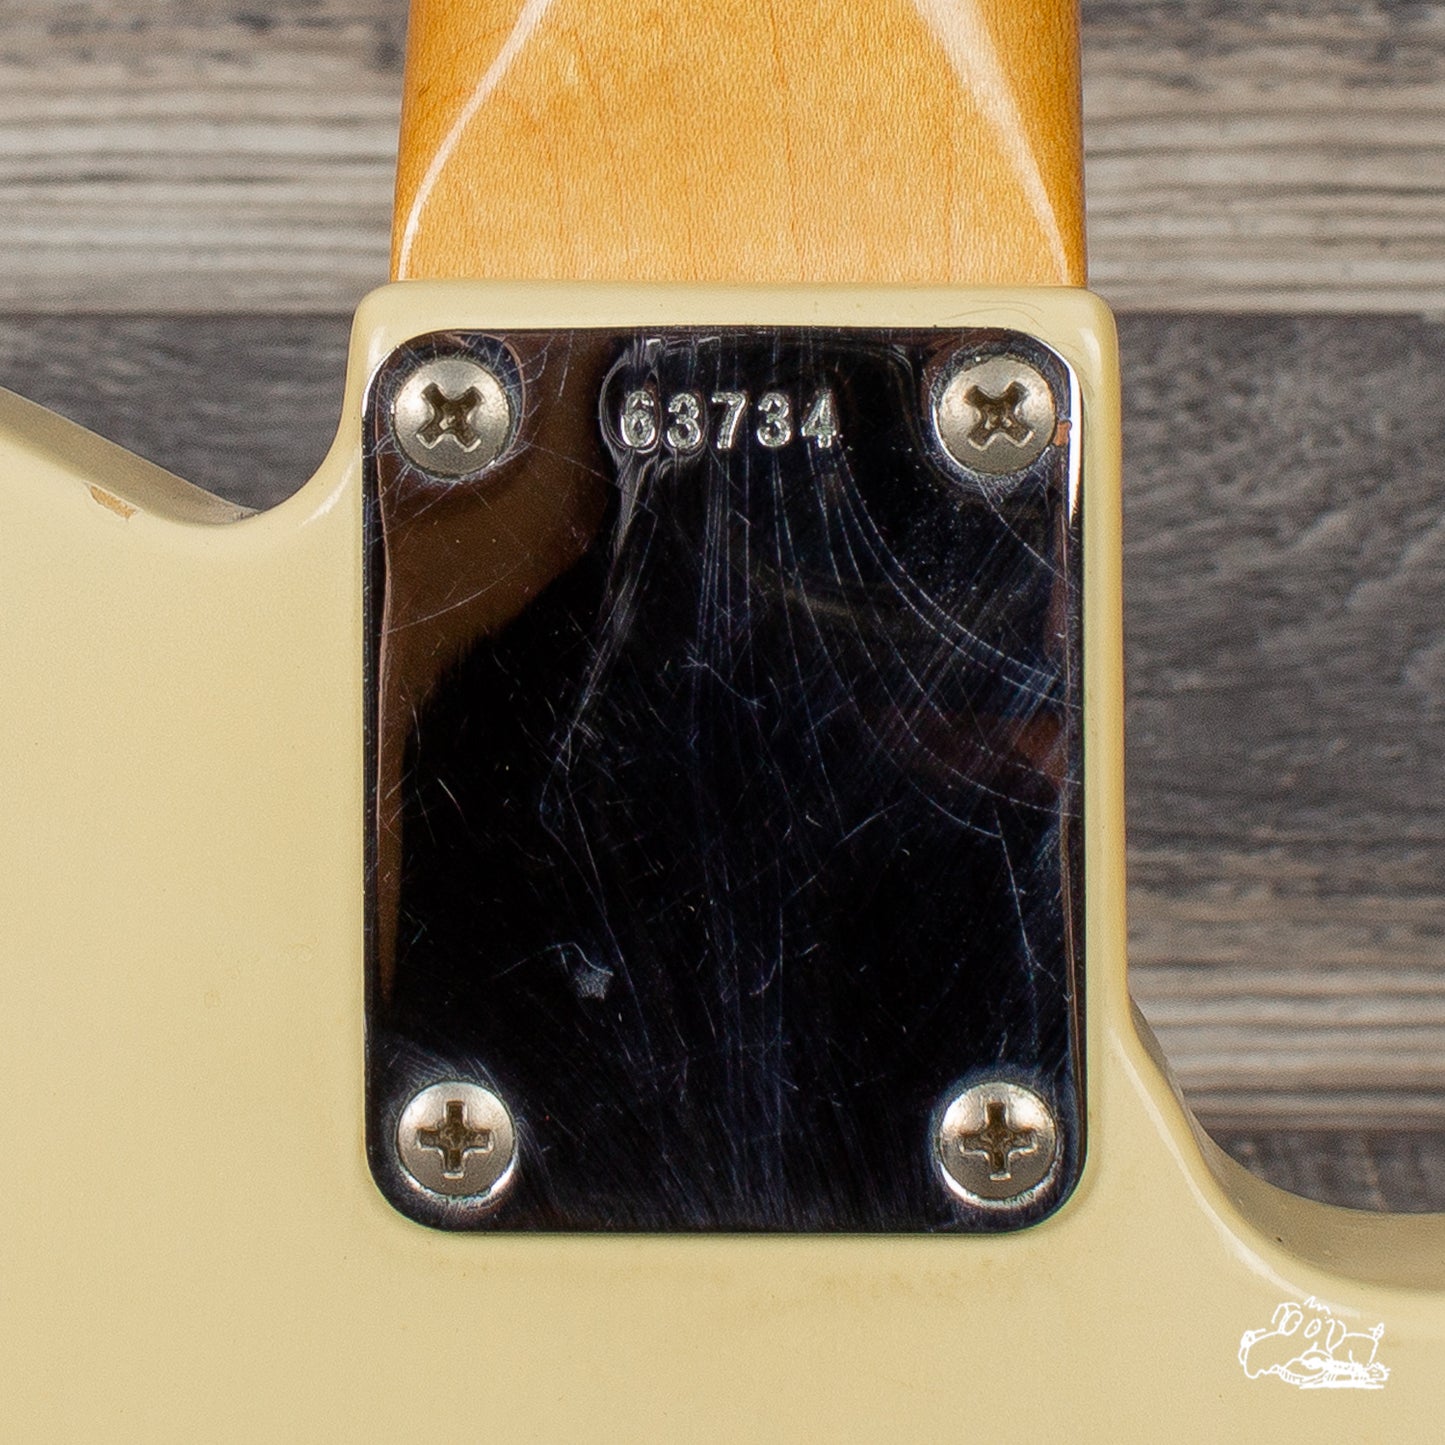 1961 Fender Telecaster Lefty